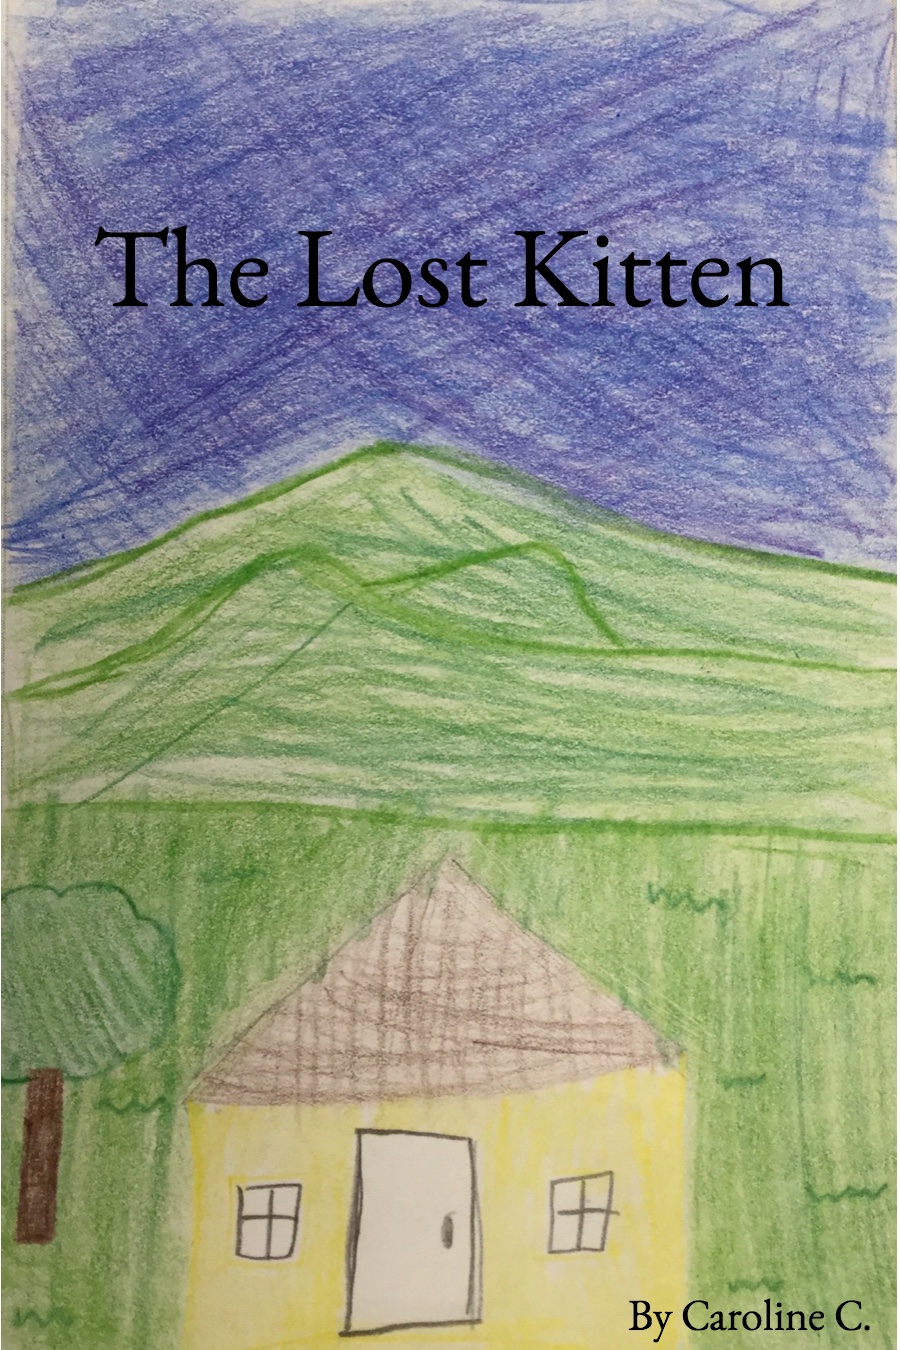 The Lost Kitten by Caroline C